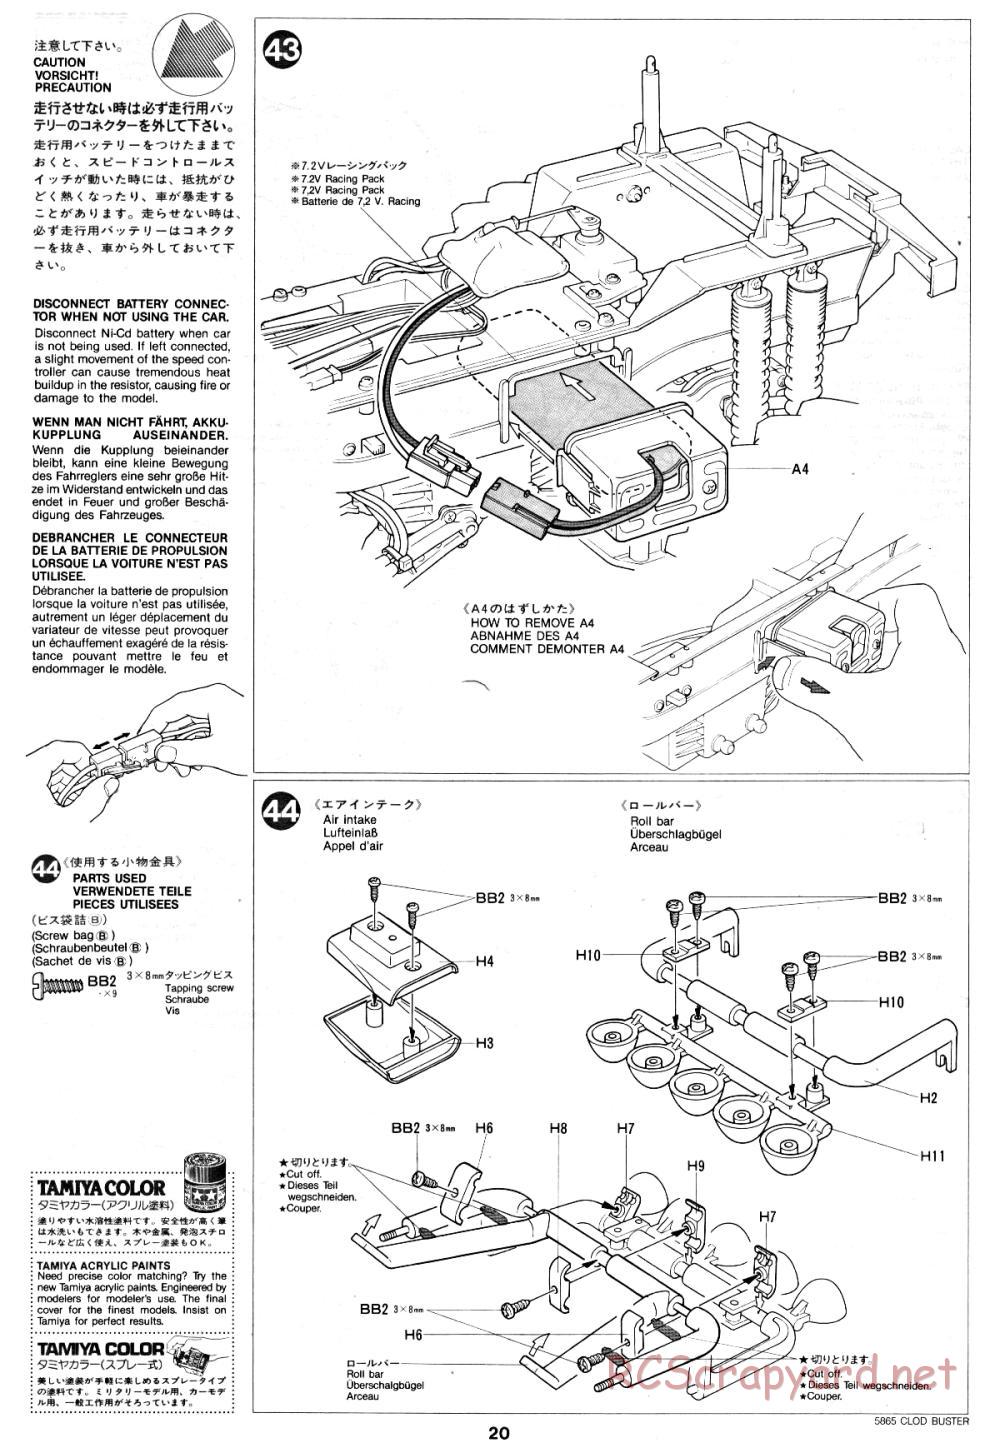 Tamiya - Clod Buster - 58065 - Manual - Page 20